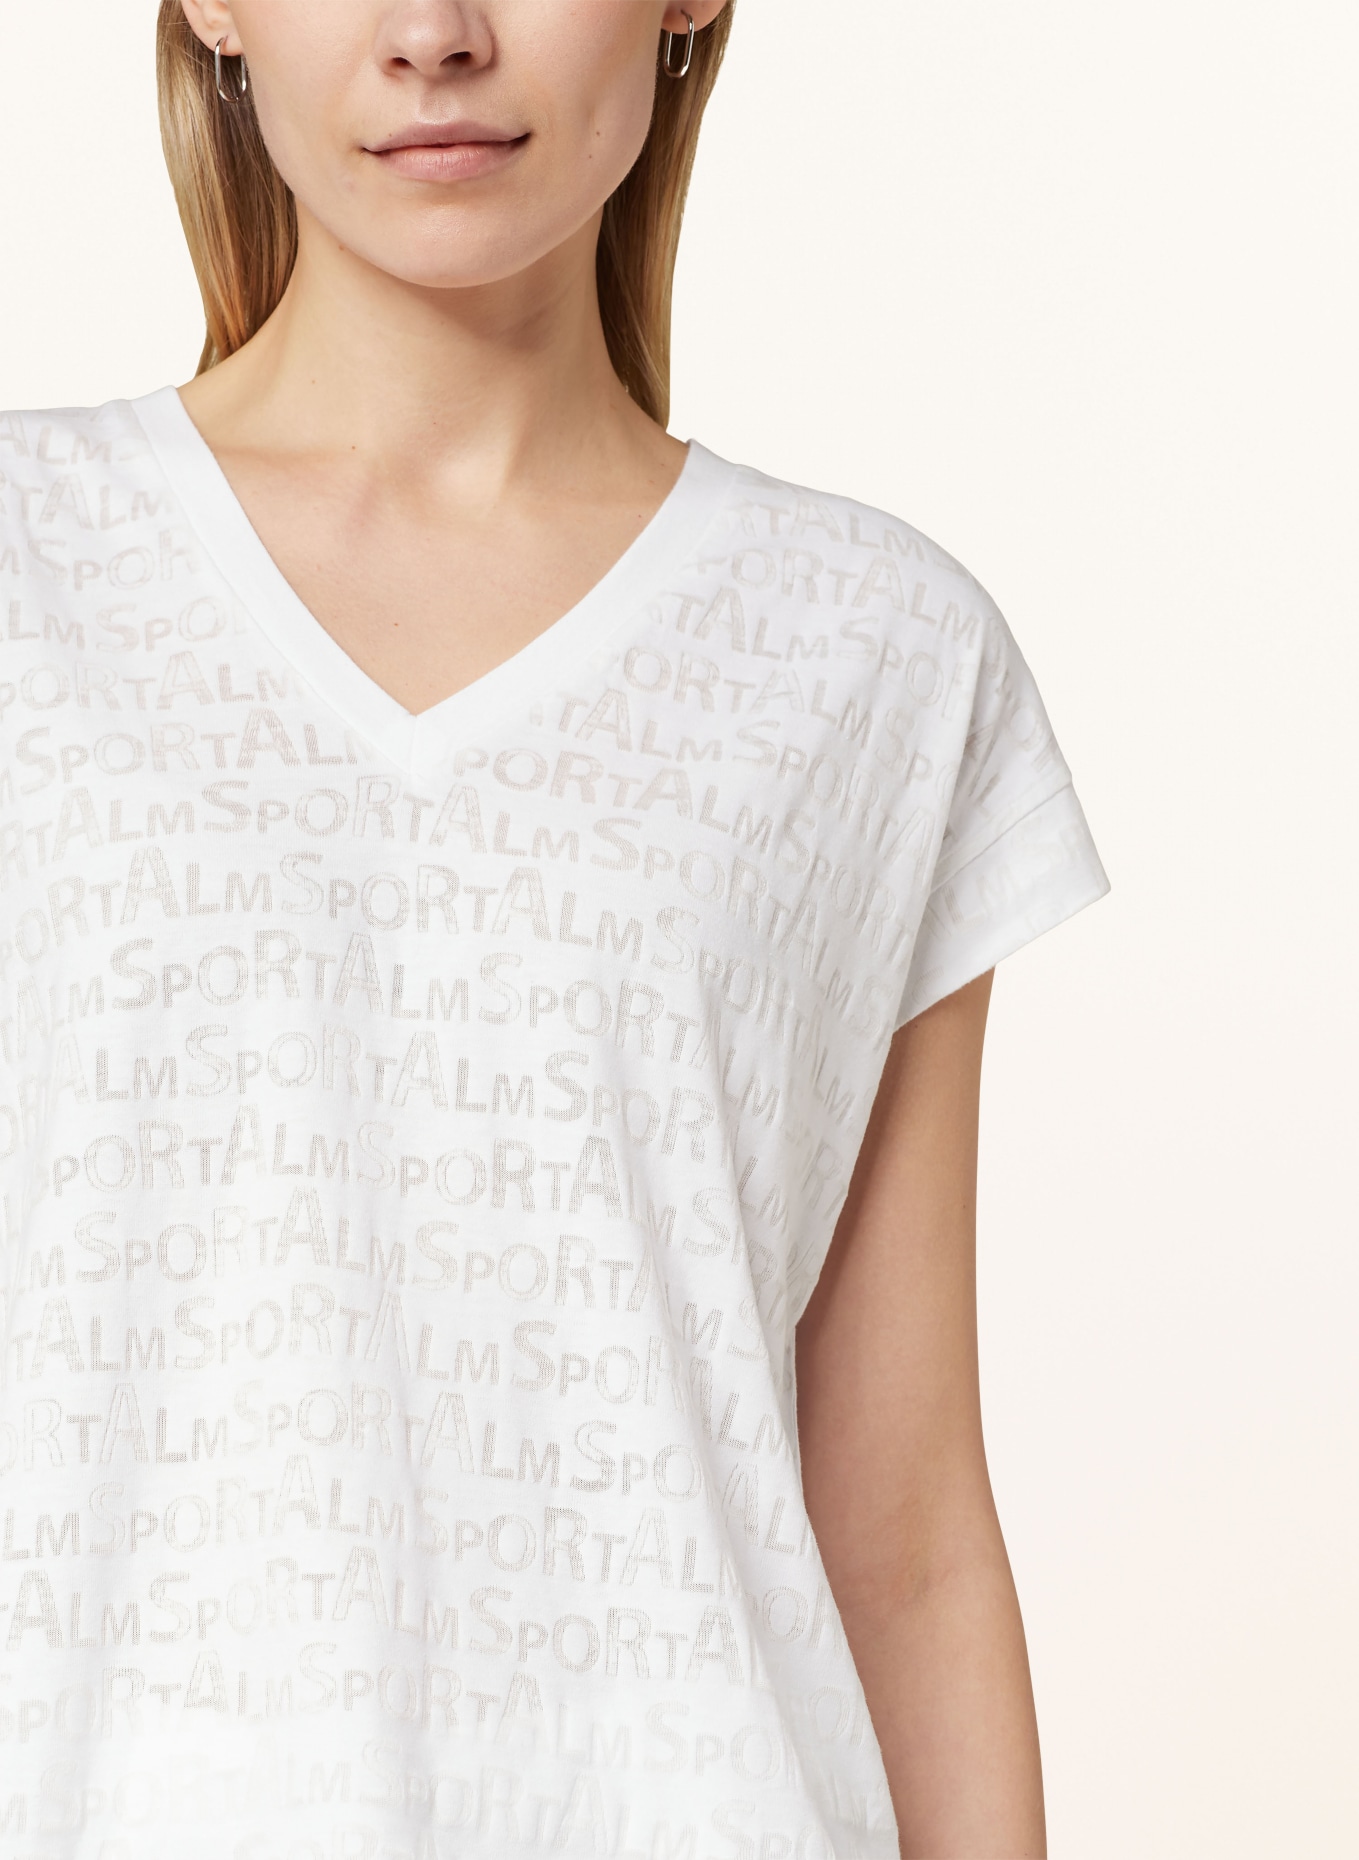 ULLI EHRLICH SPORTALM T-shirt, Color: WHITE (Image 4)